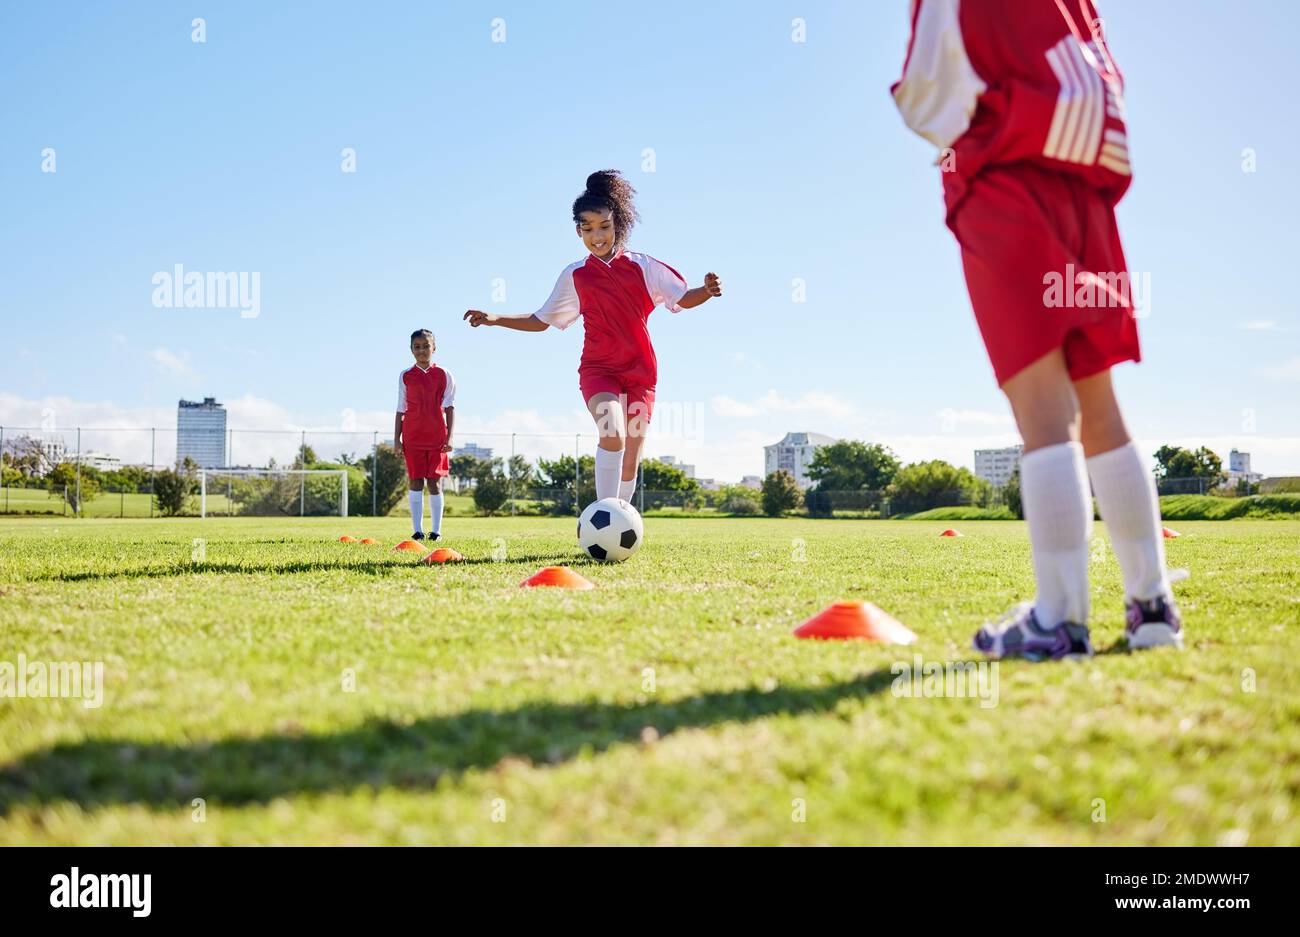 Football, entraînement ou course à pied et une équipe de filles jouant avec un ballon ensemble sur un terrain de pratique. Fitness, football et herbe avec les enfants sportifs Banque D'Images